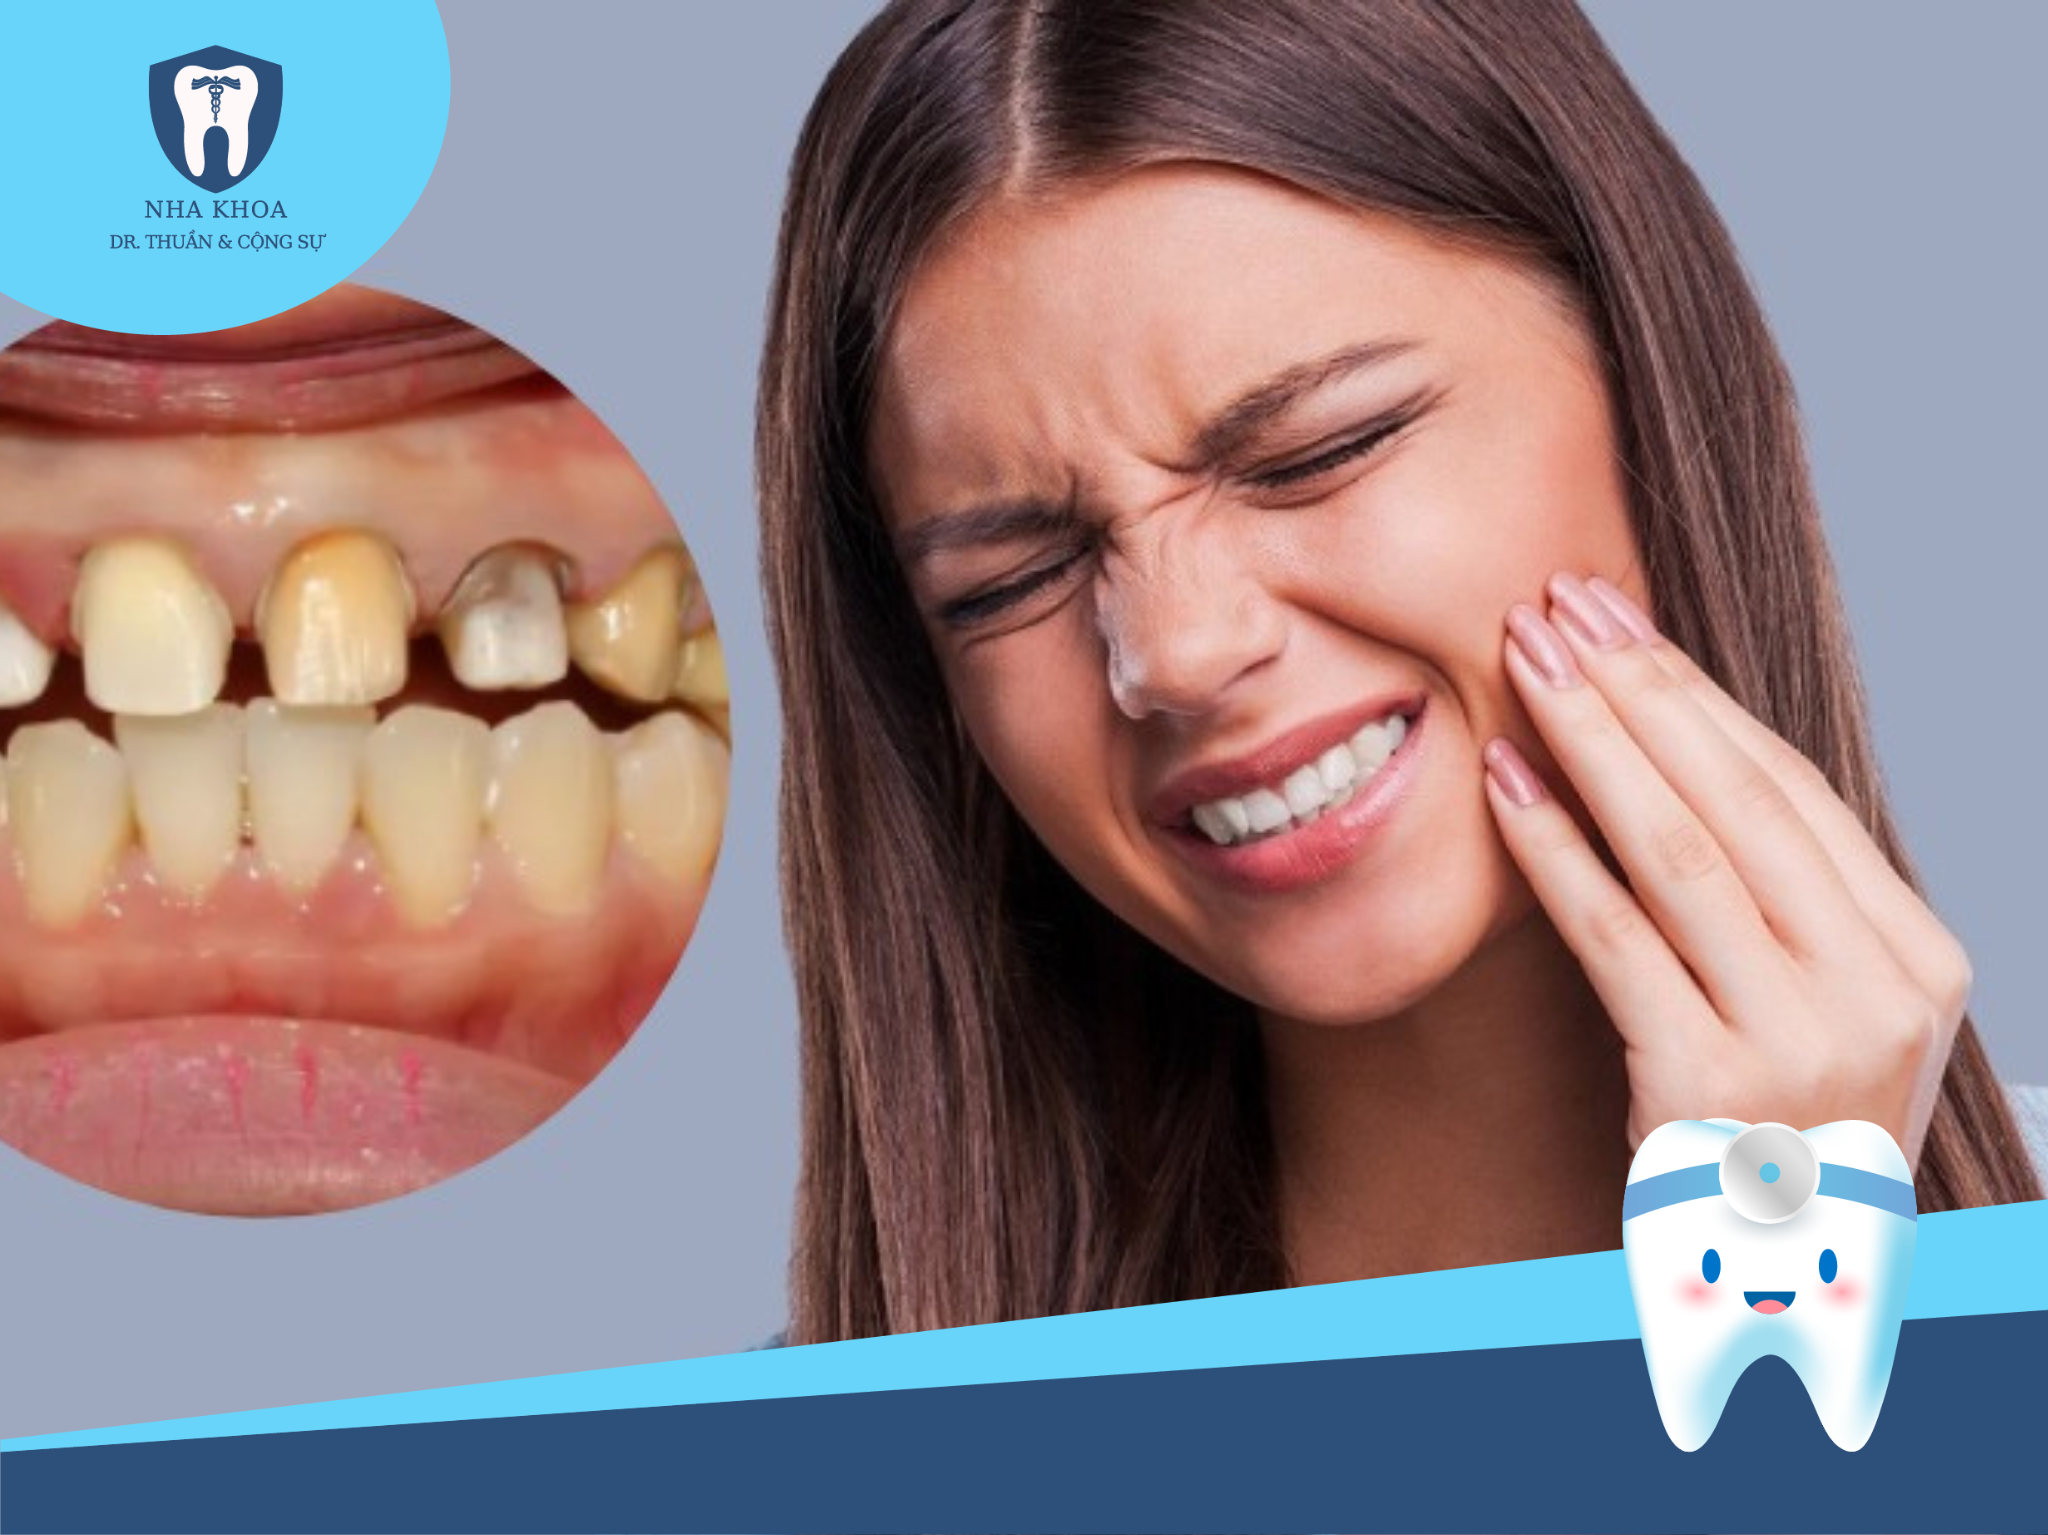 Bọc răng sứ là một phương pháp thẩm mỹ răng an toàn, giúp cải thiện nhiều vấn đề về răng mà không gây hại hoặc tác dụng phụ nếu được thực hiện đúng cách. 